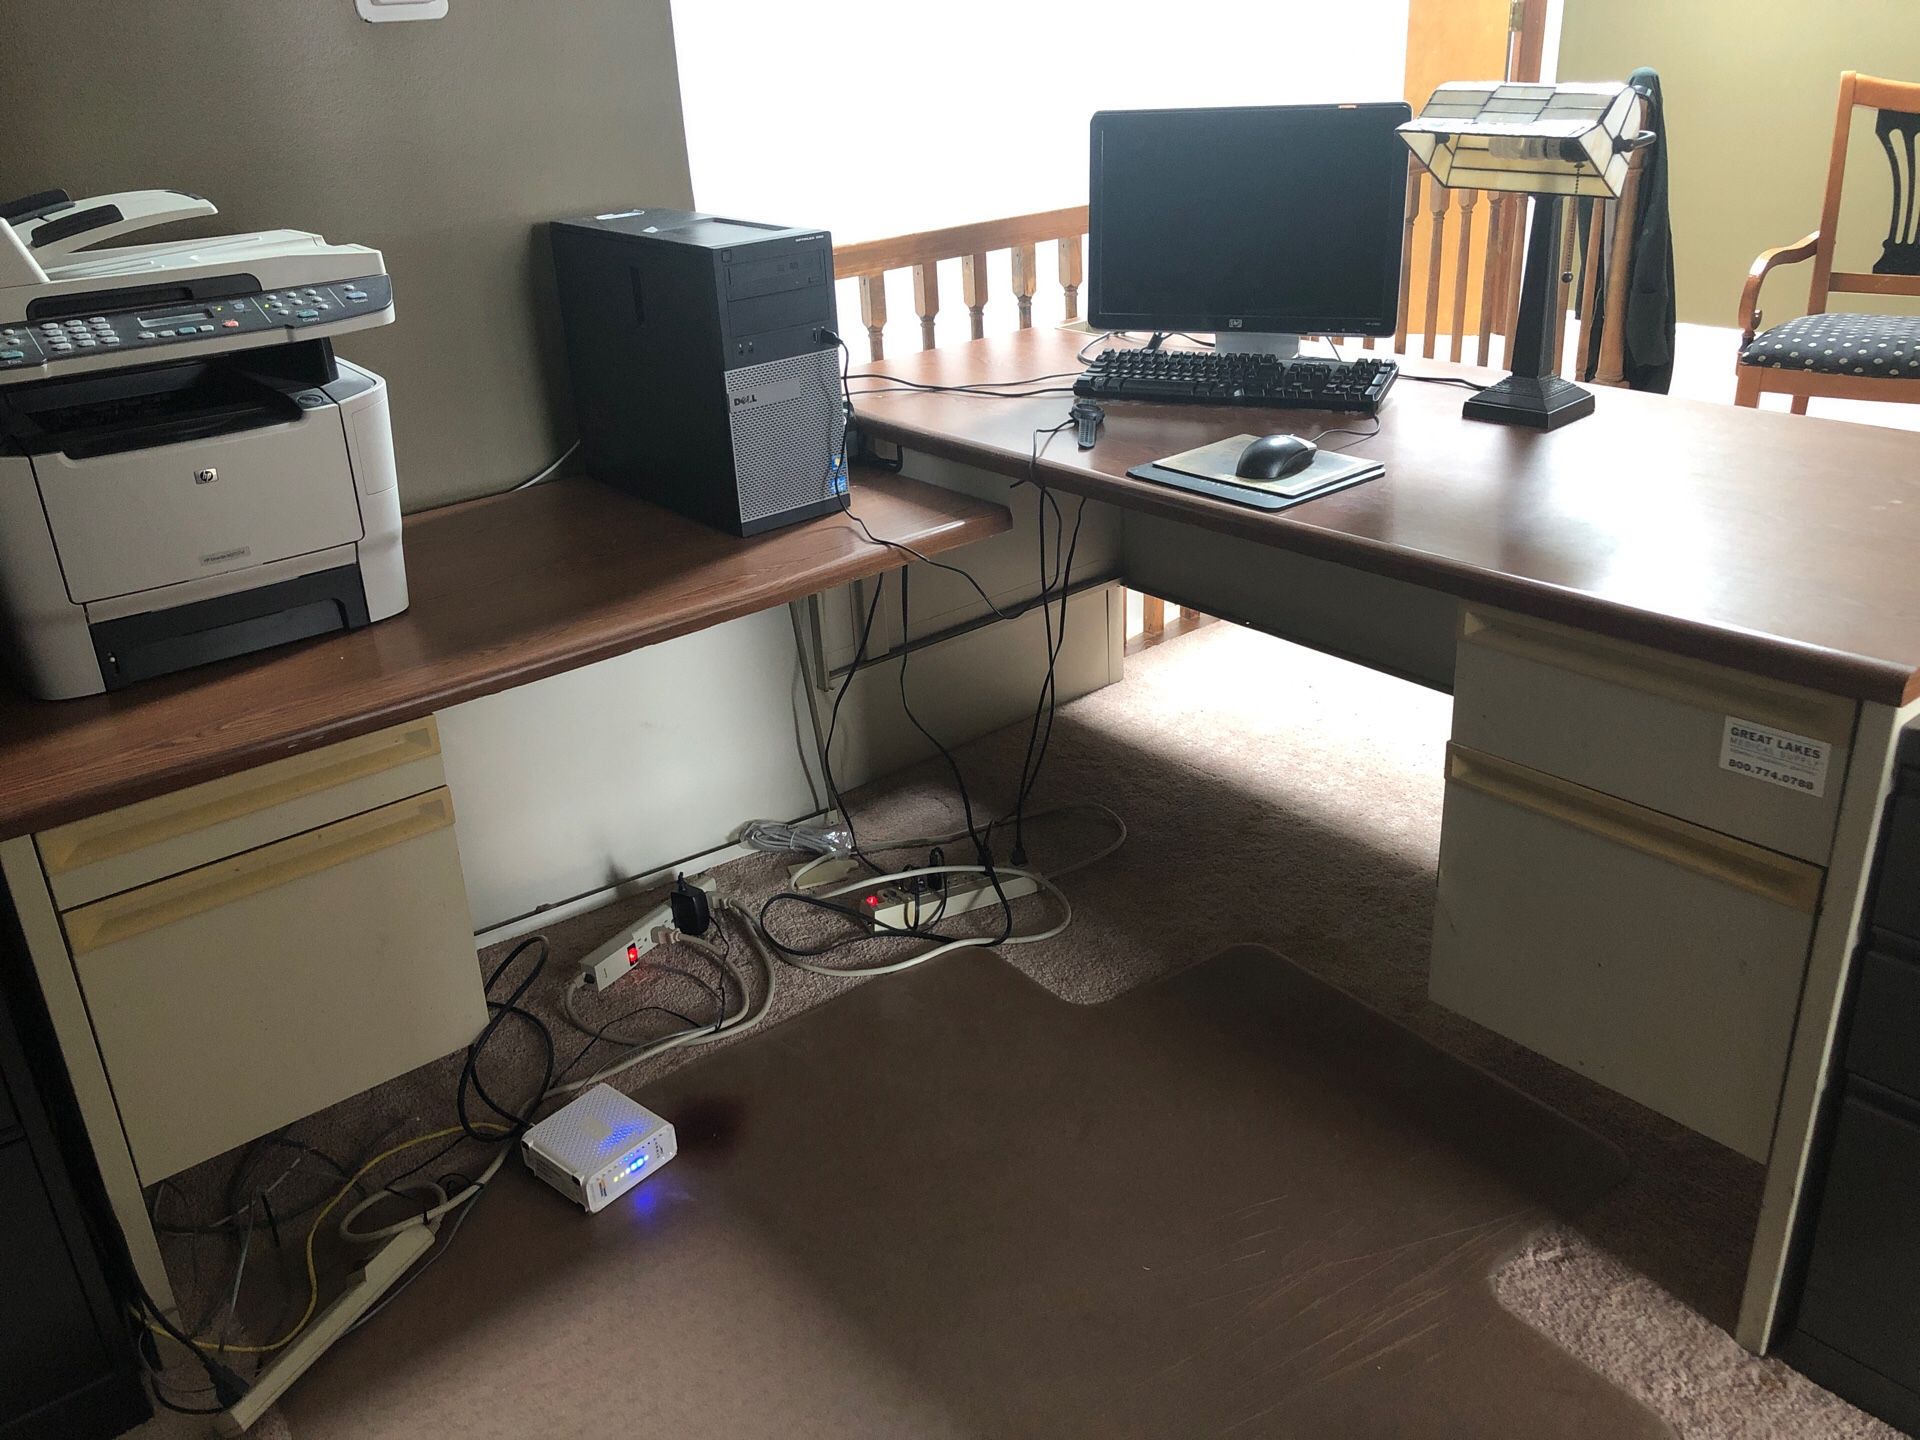 Office desk/furniture